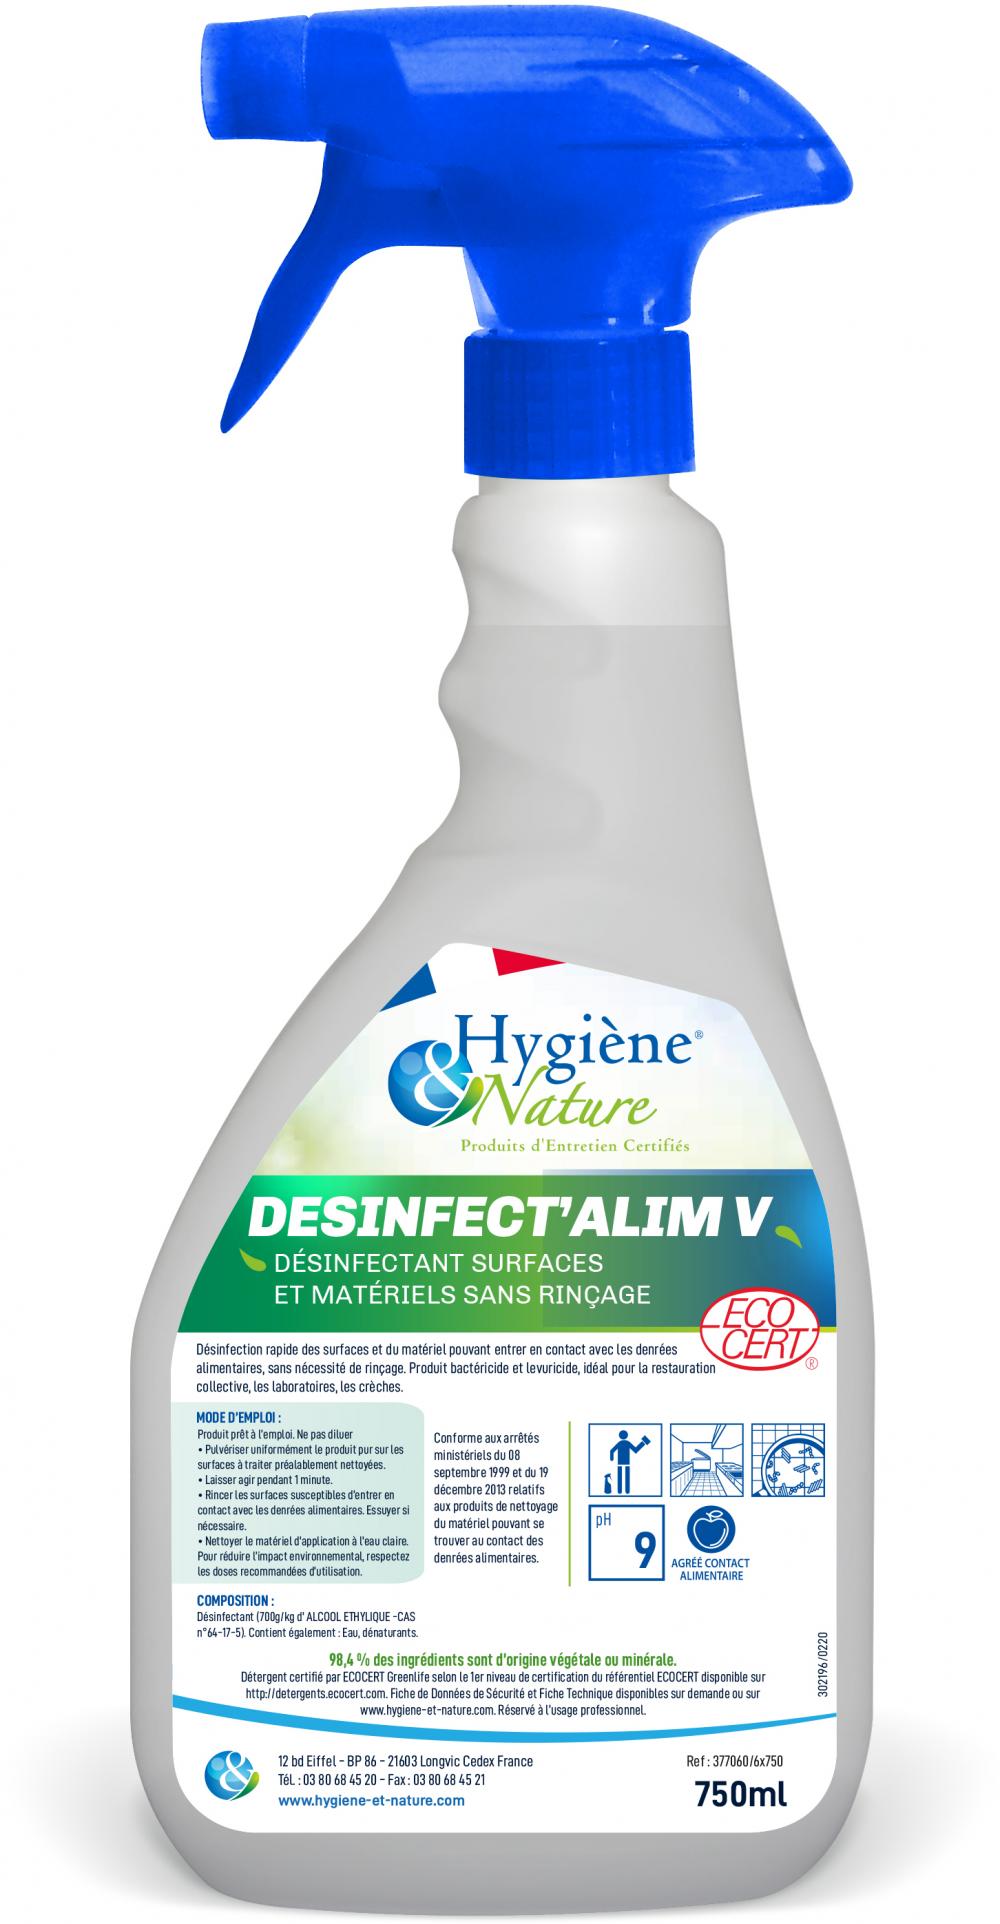 Image de Desinfect'alim SR V Ecocert : Désinfectant de surfaces sans rinçage